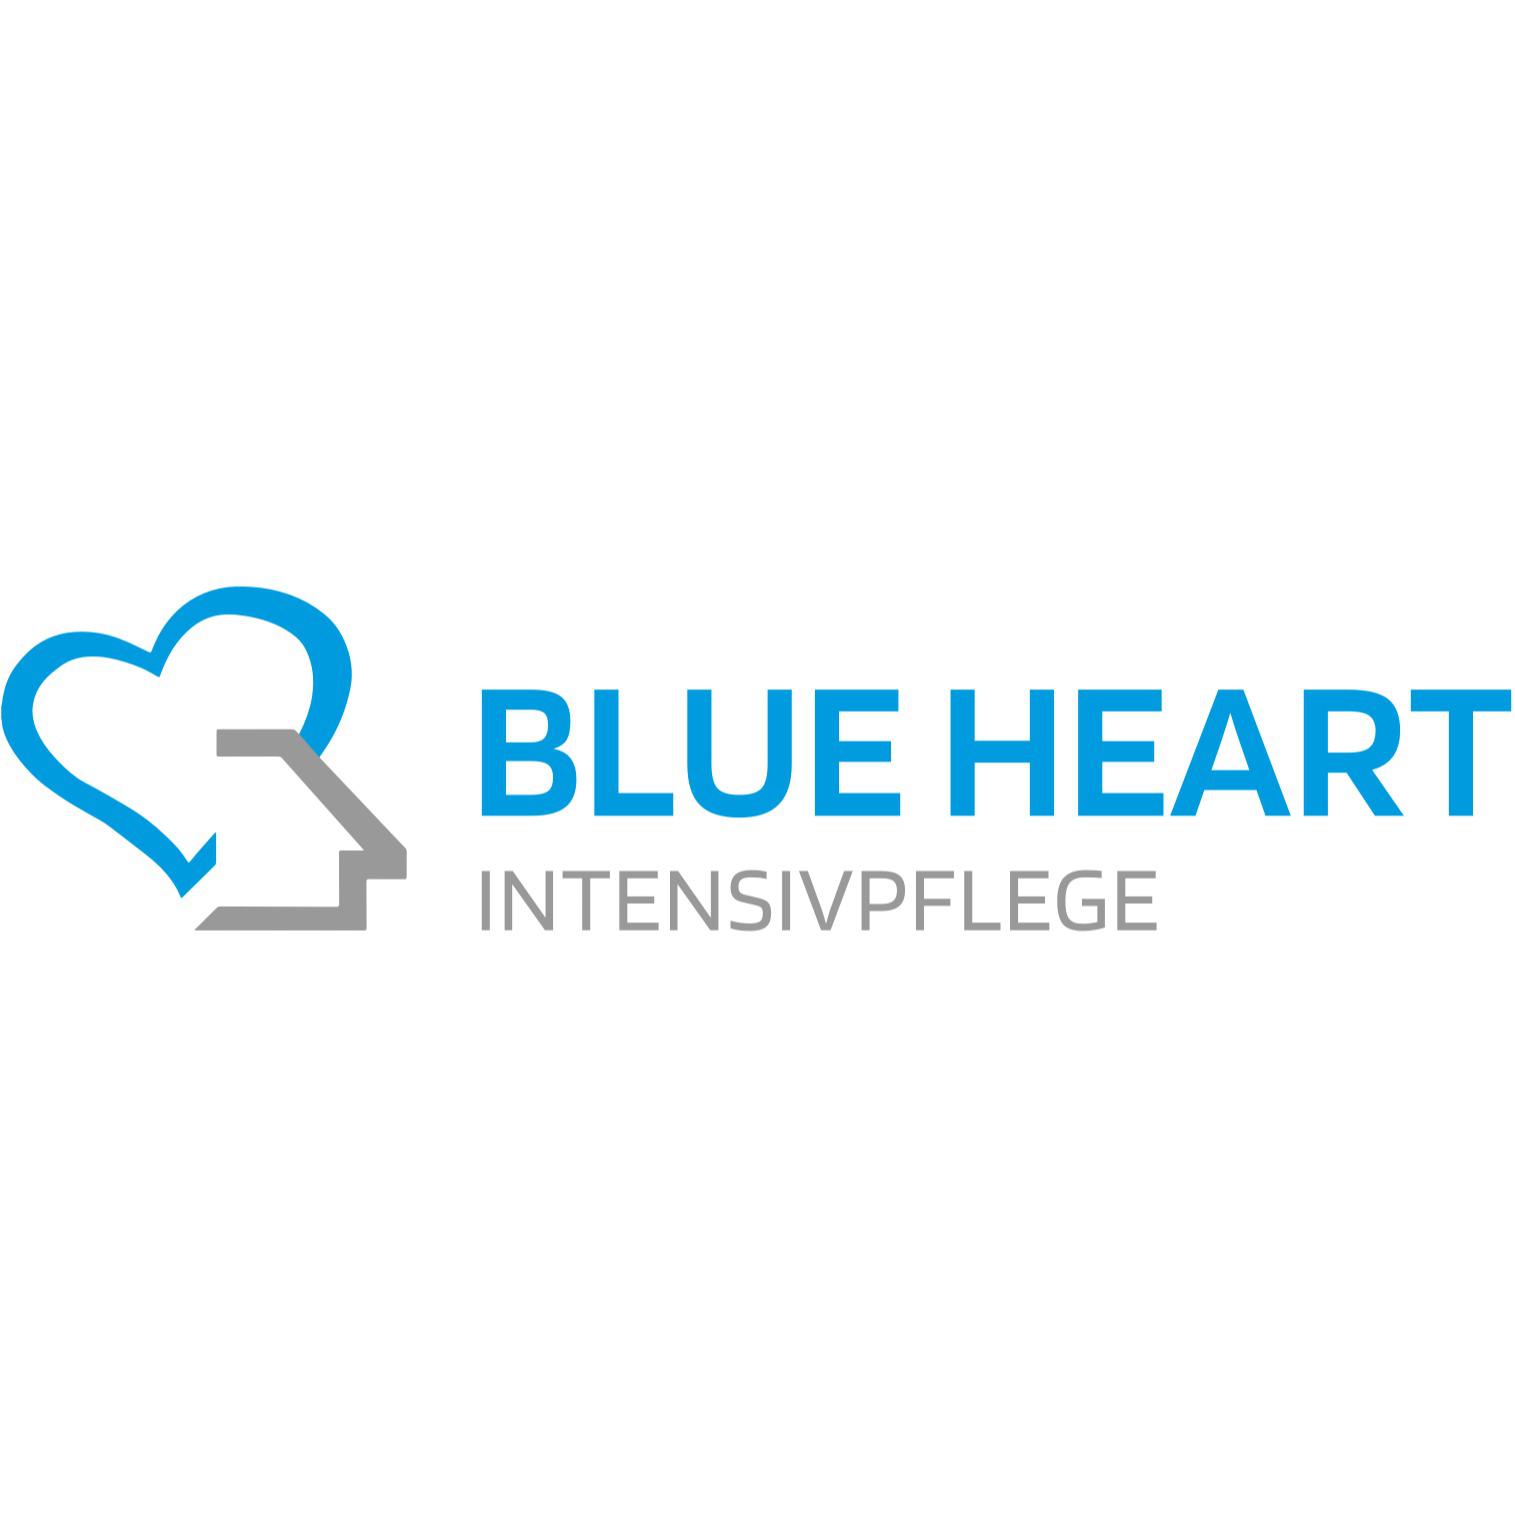 Blue Heart Intensivpflegegesellschaft mbH & Co. KG in Hannover - Logo